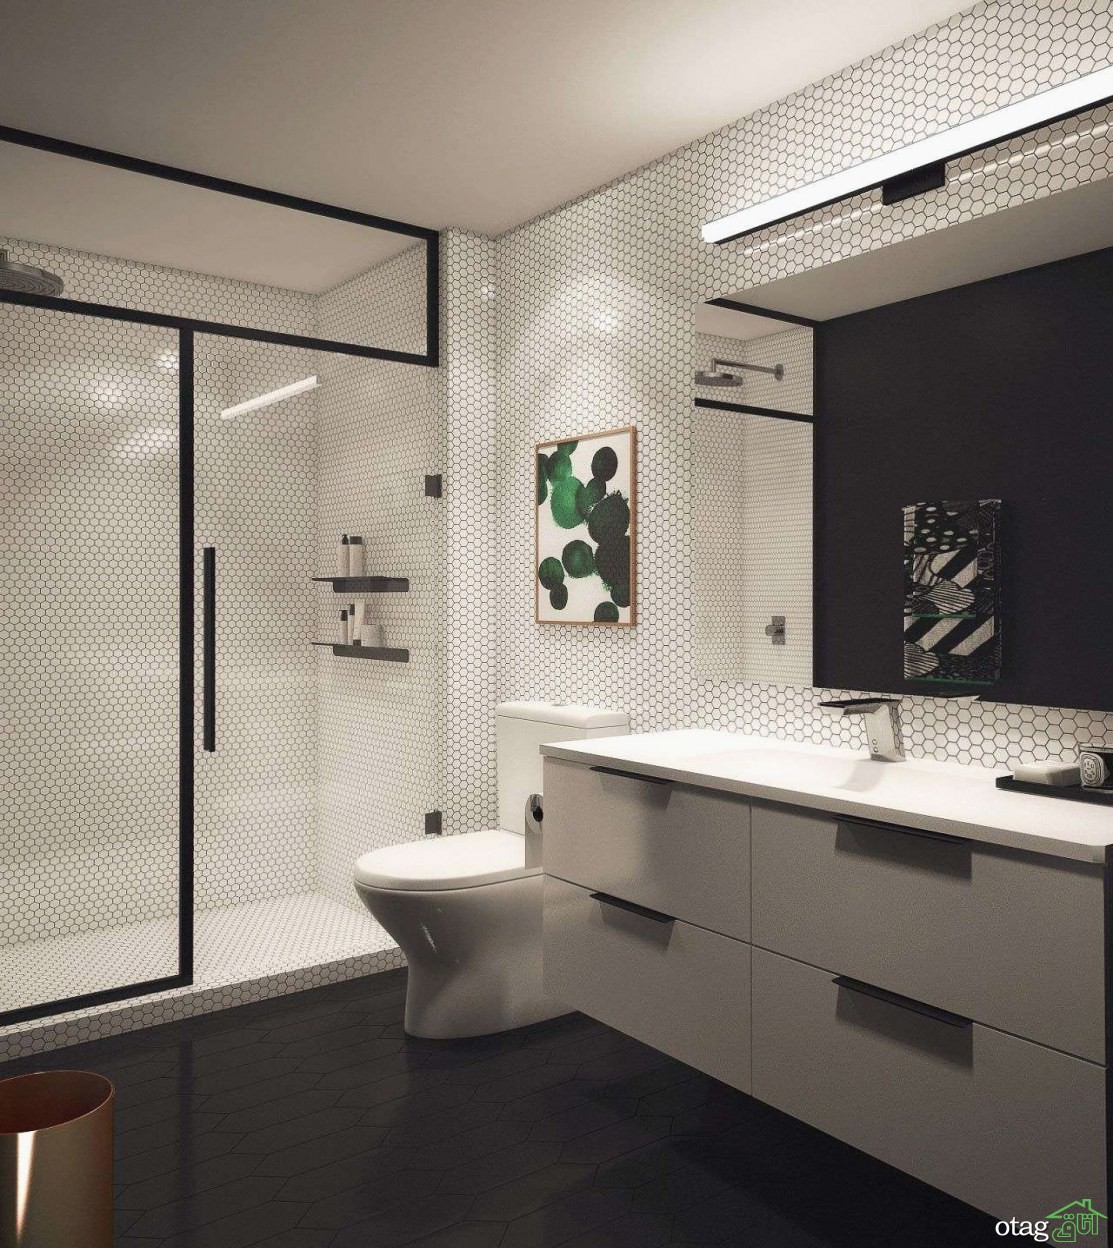 بهترین ایده های طراحی دکوراسیون داخلی حمام در سال جدید